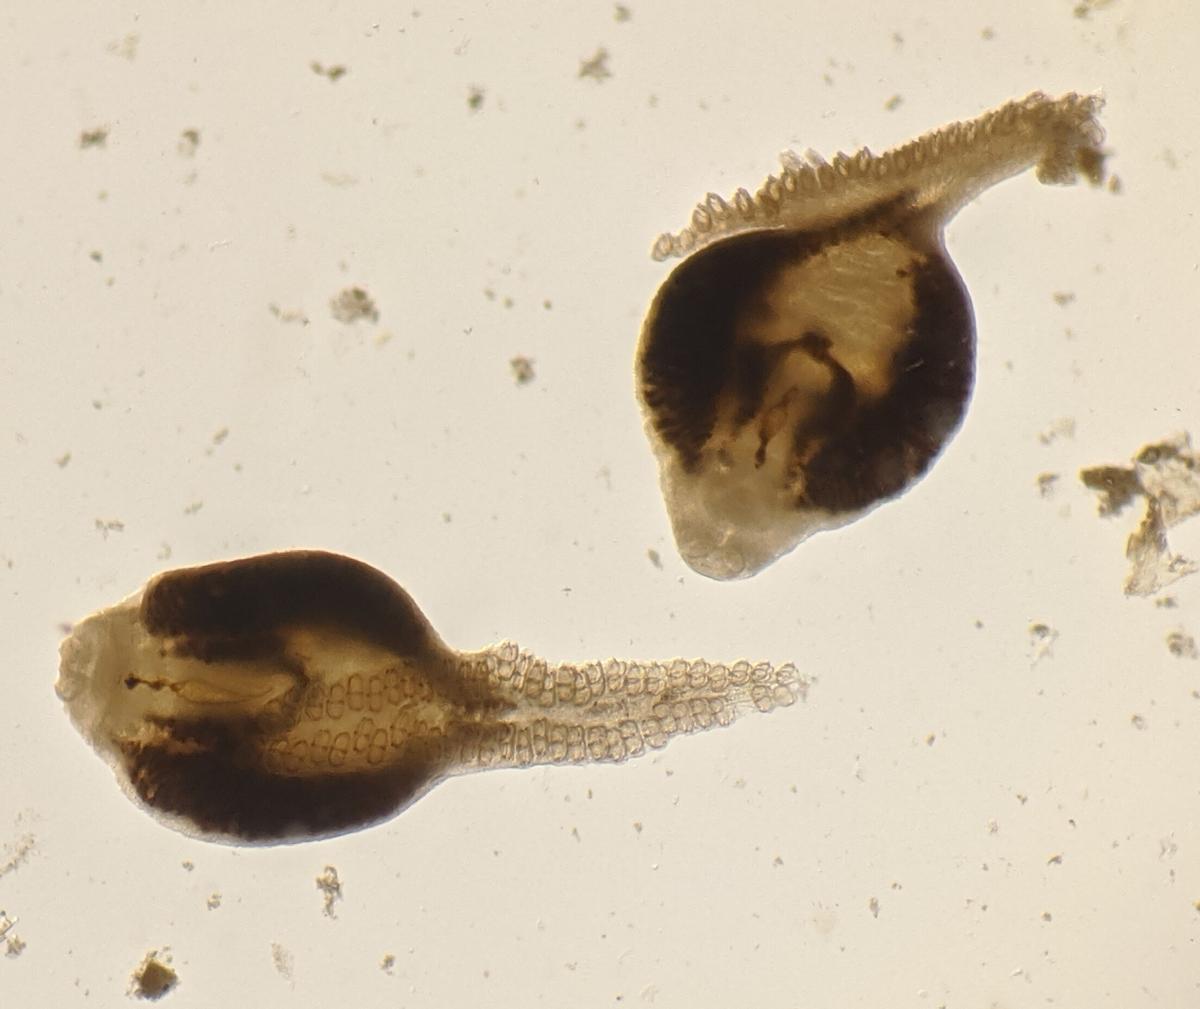 Gusanos monogéneos (Microcotyle sebastis) disecados de las branquias de un pez de roca cobrizo conservado en el Museo Burke de la Universidad de Washington.